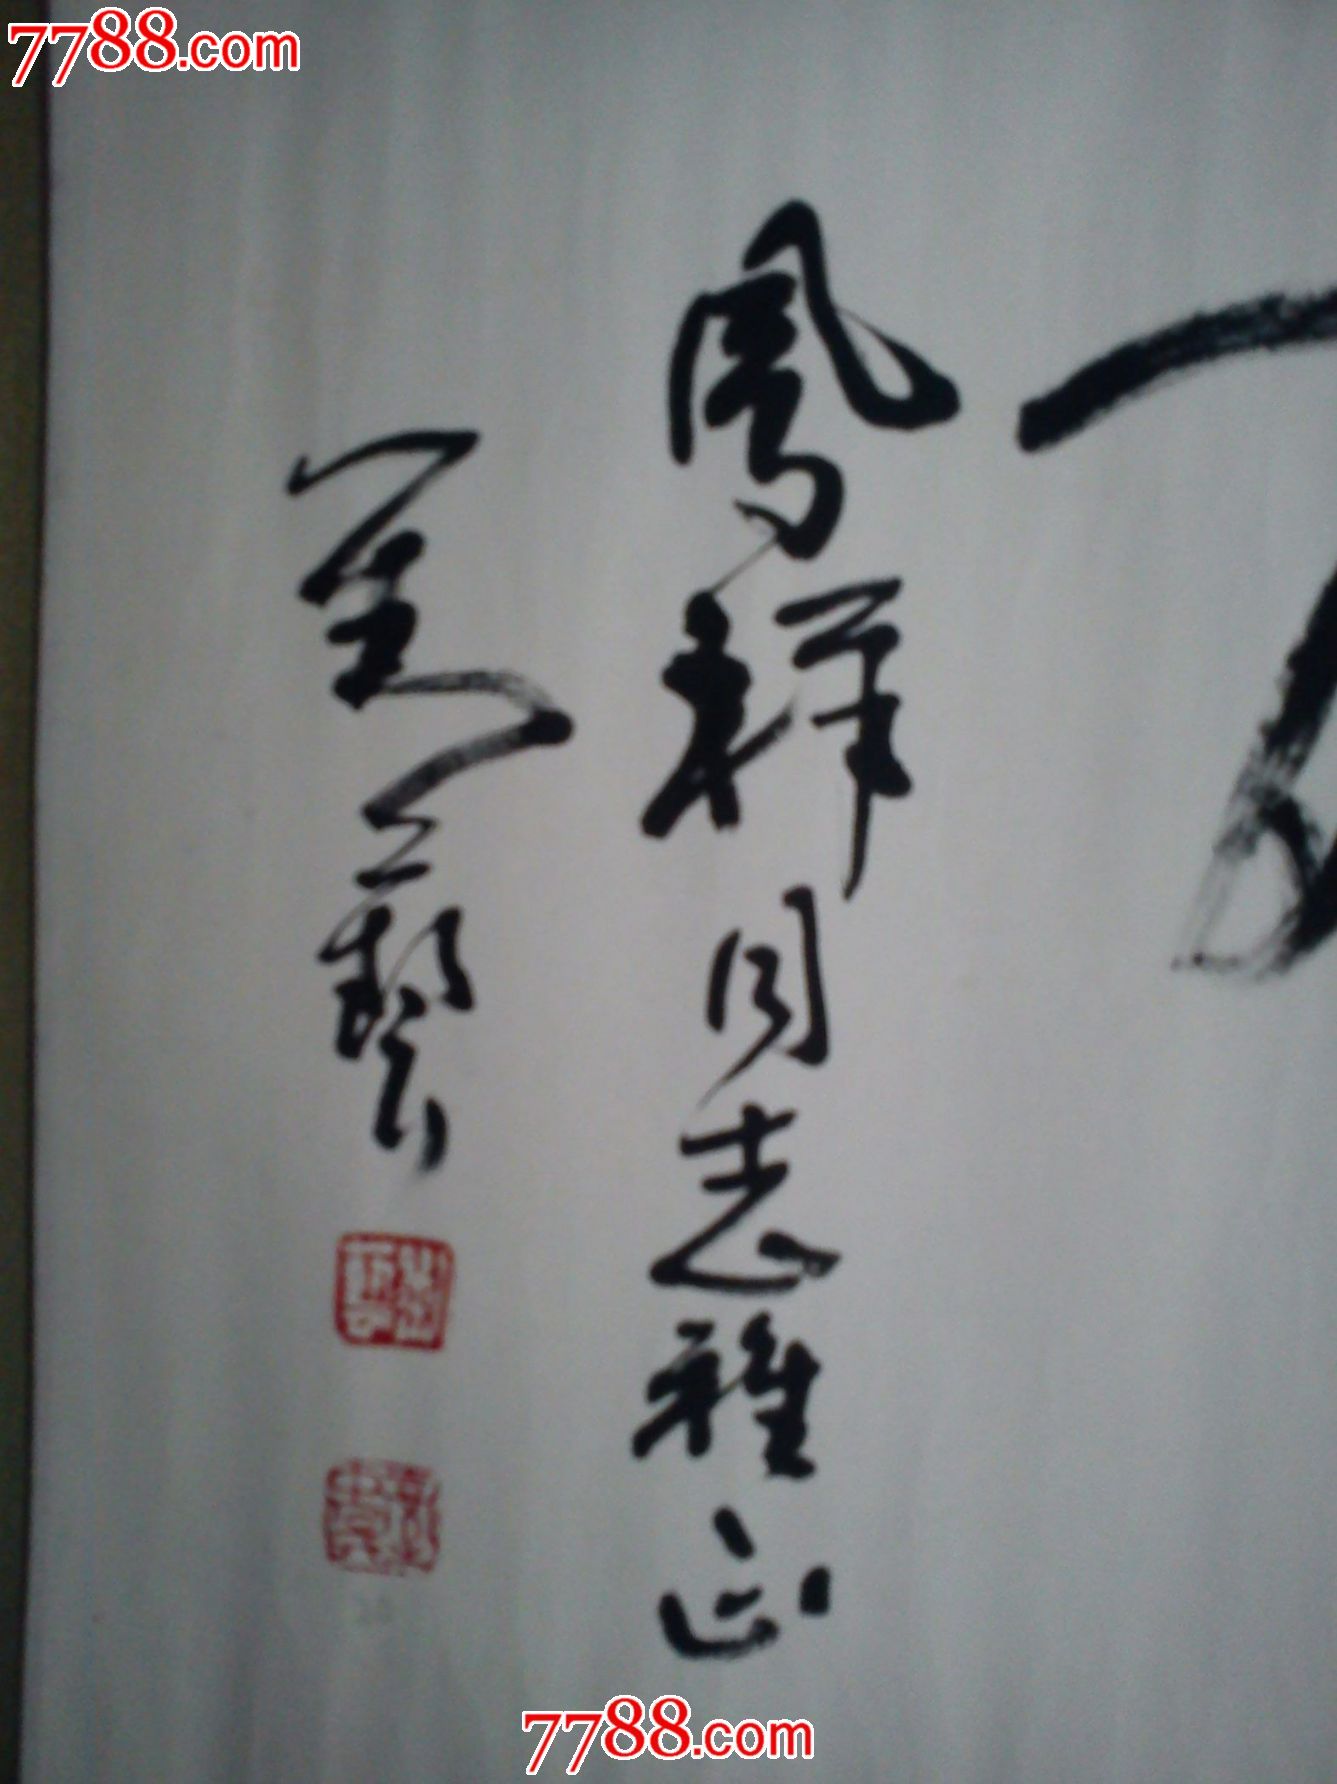 刘艺泰斗级书法家作品(5.0184平方尺,10万元)